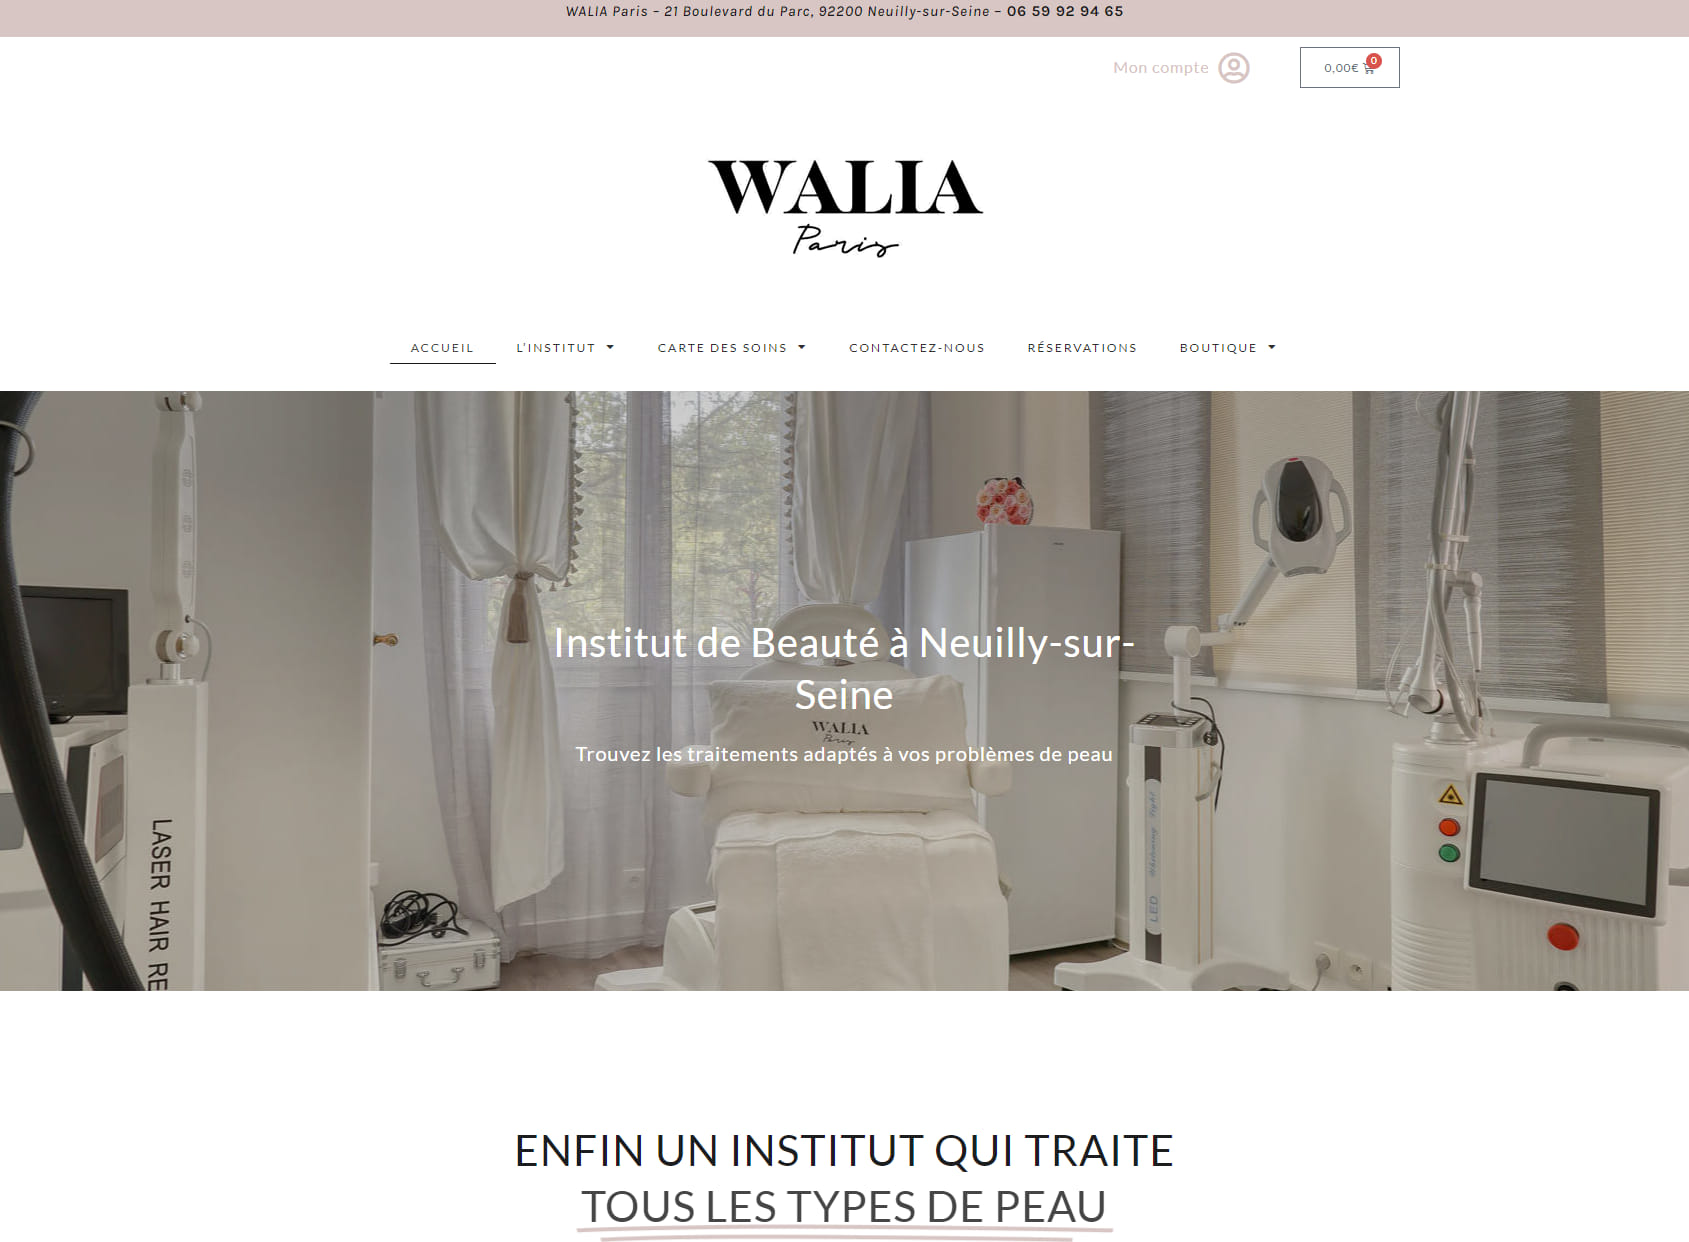 Walia Paris - Institut de beauté Neuilly sur Seine